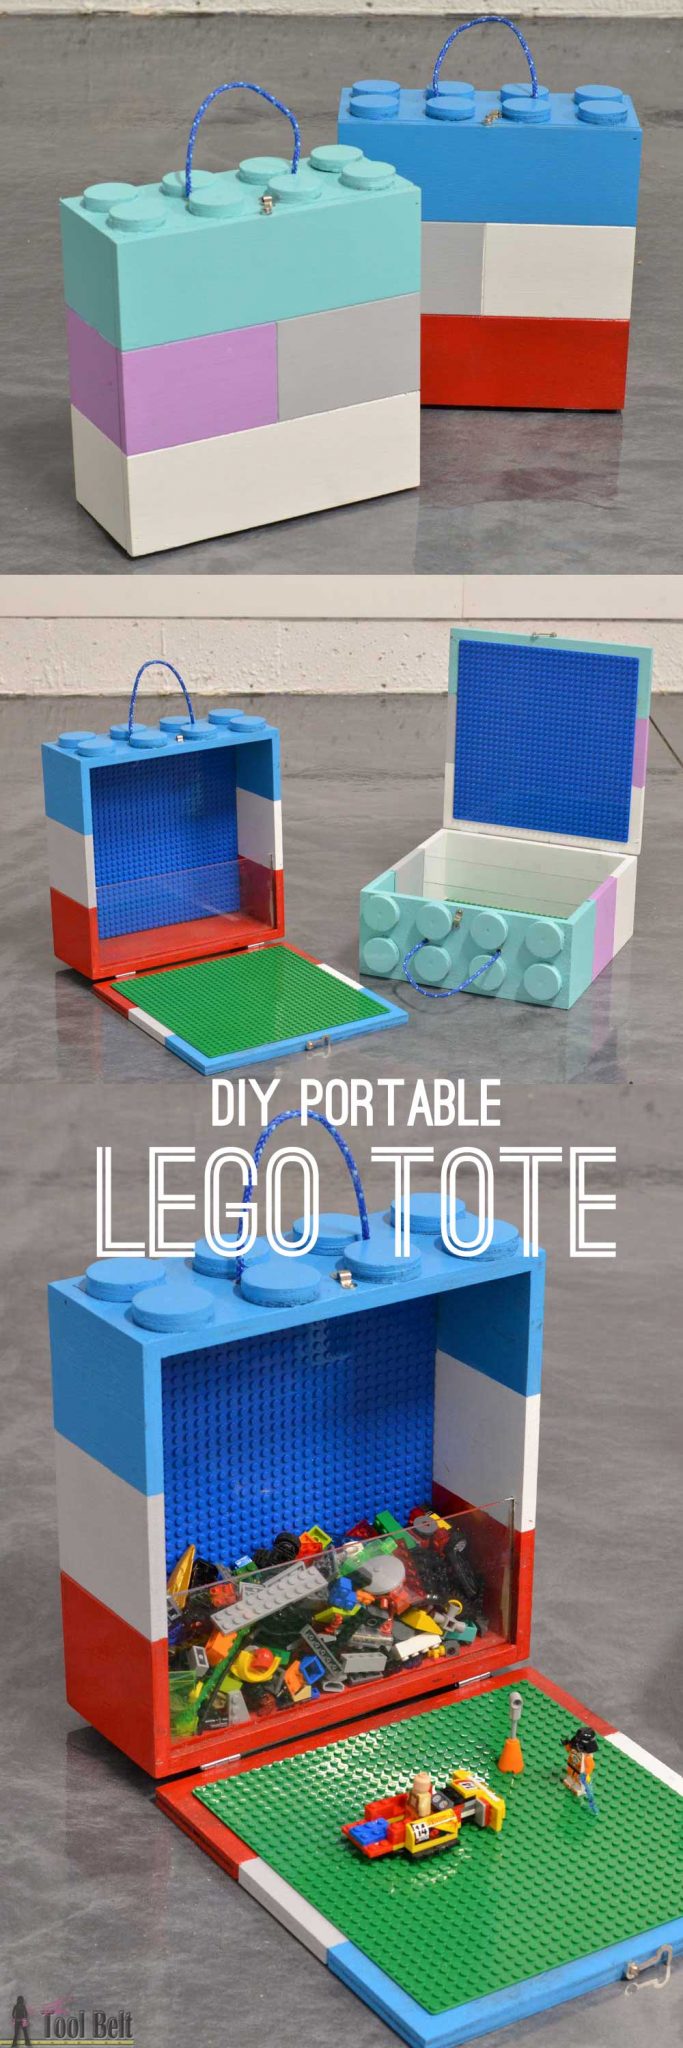 heel fijn Mysterieus Grondig DIY Portable Lego Tote - Her Tool Belt